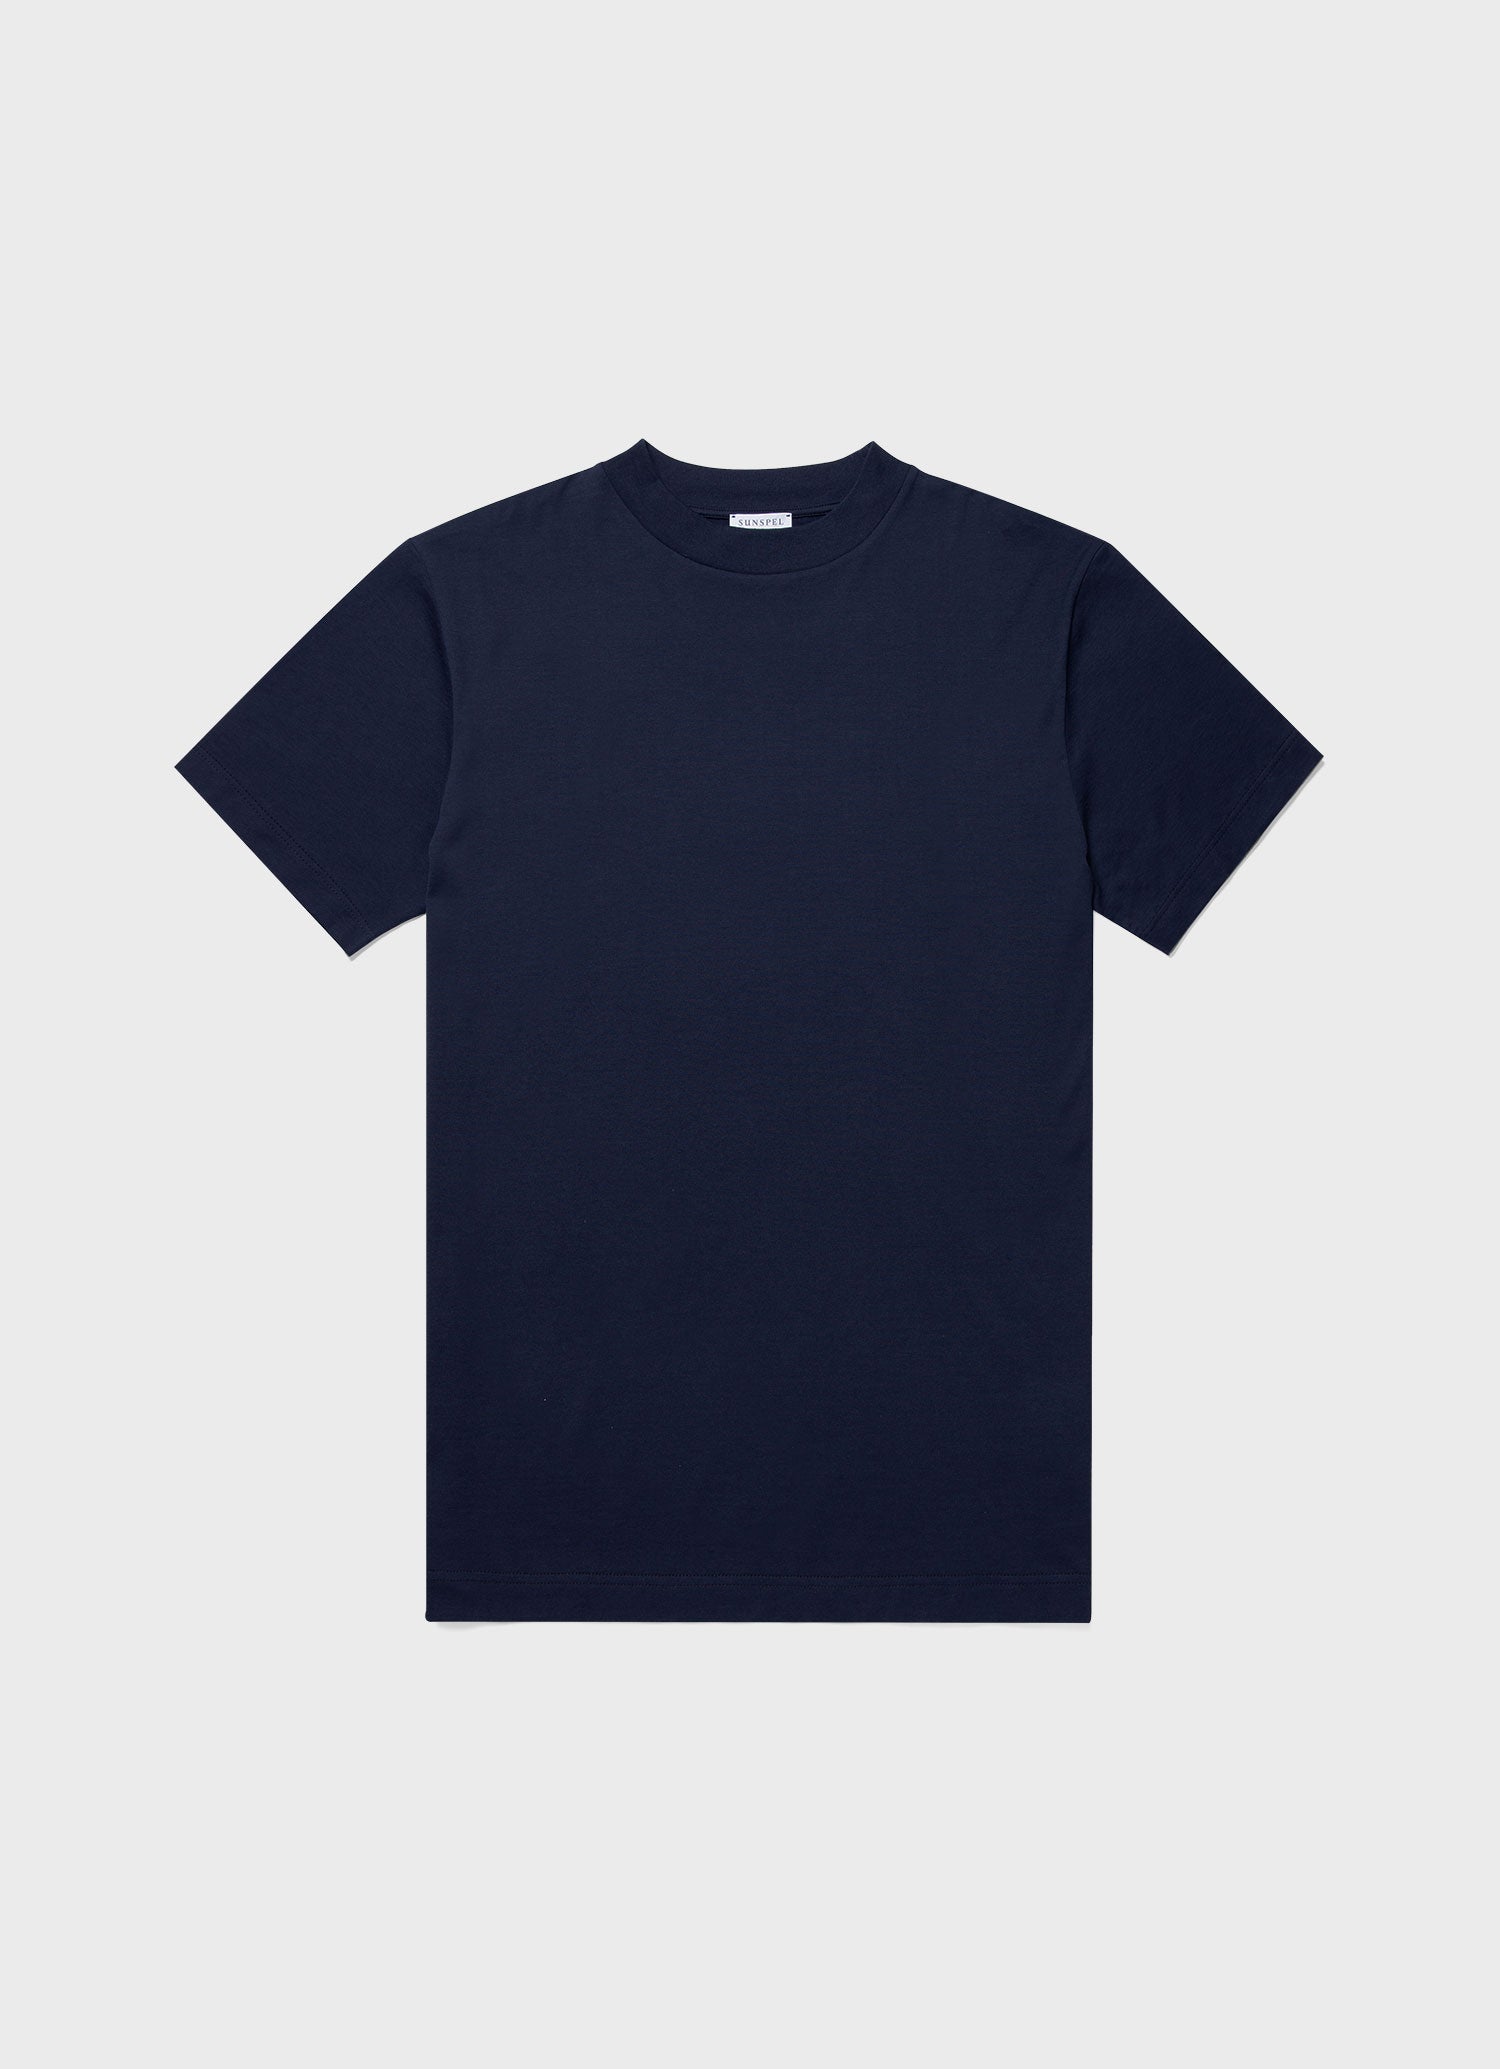 モックネックTシャツ（Navy）| Sunspel